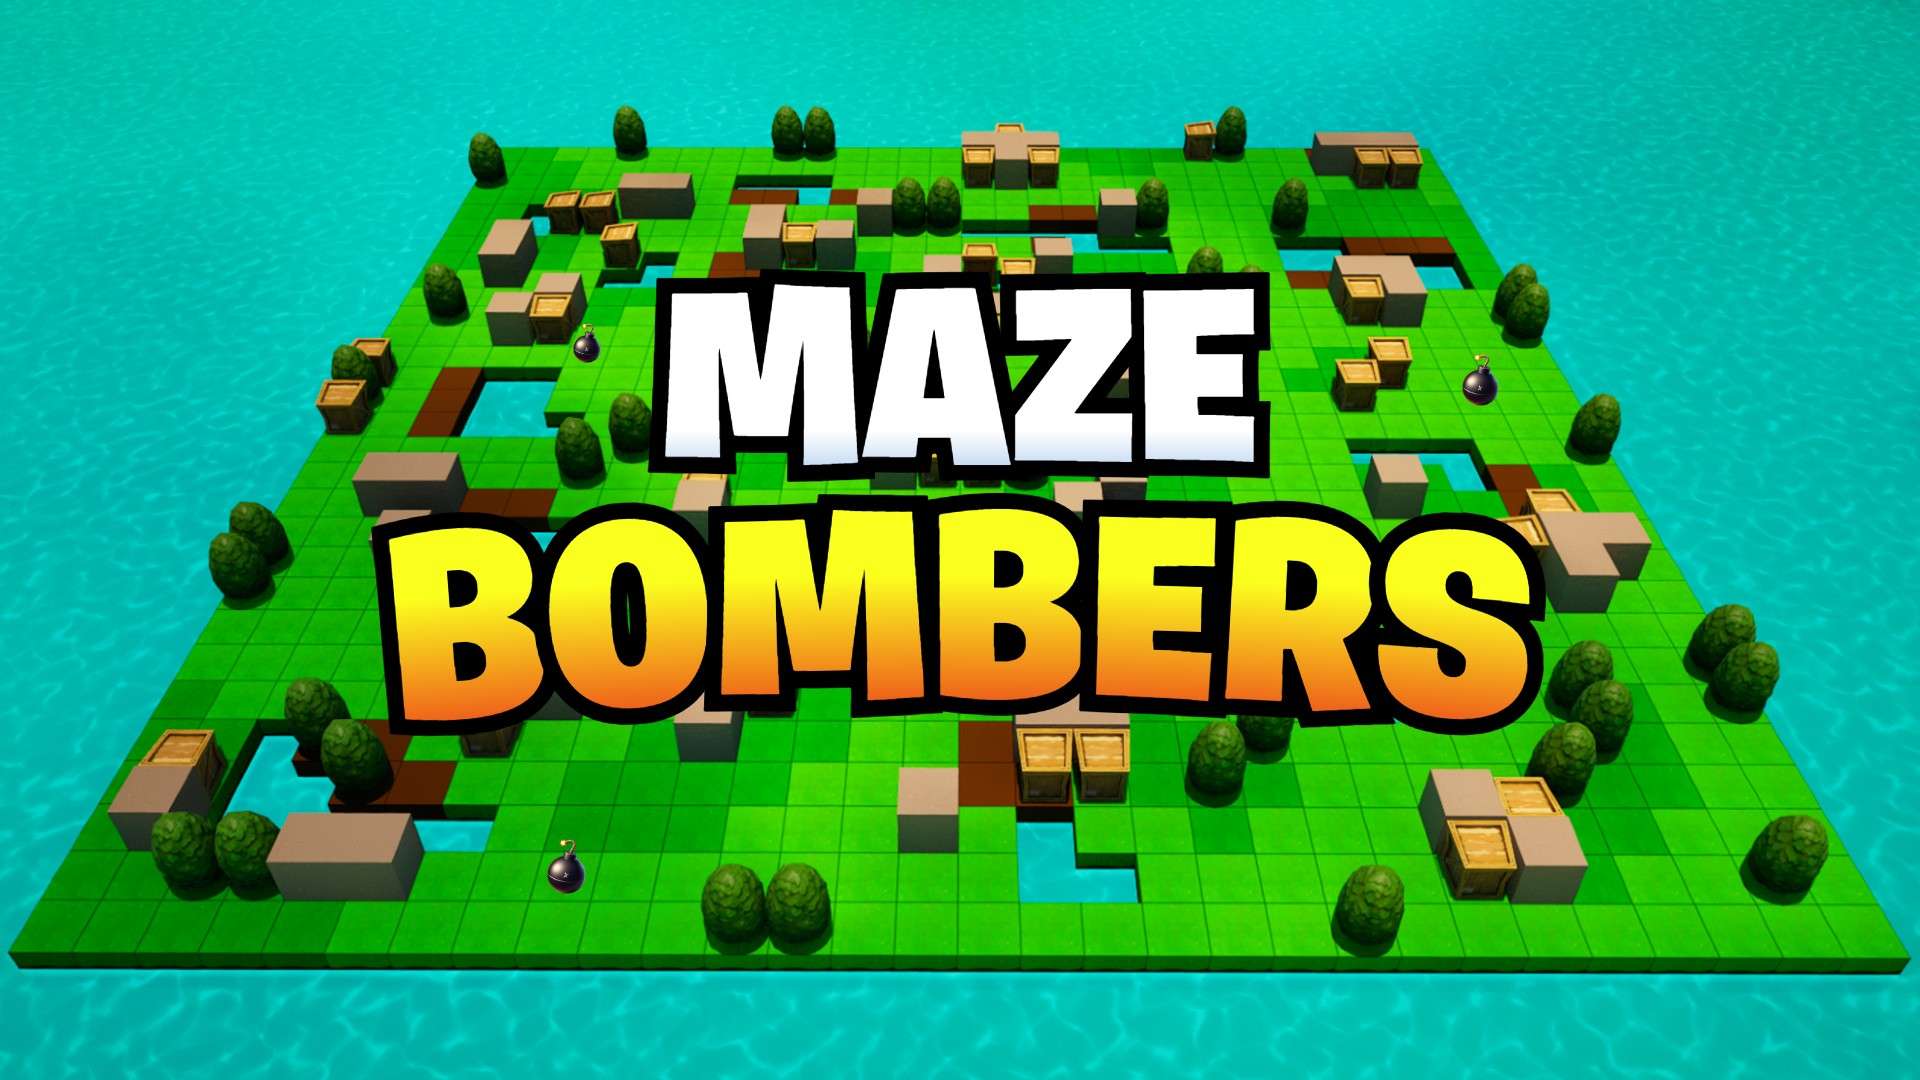 Maze Bombers